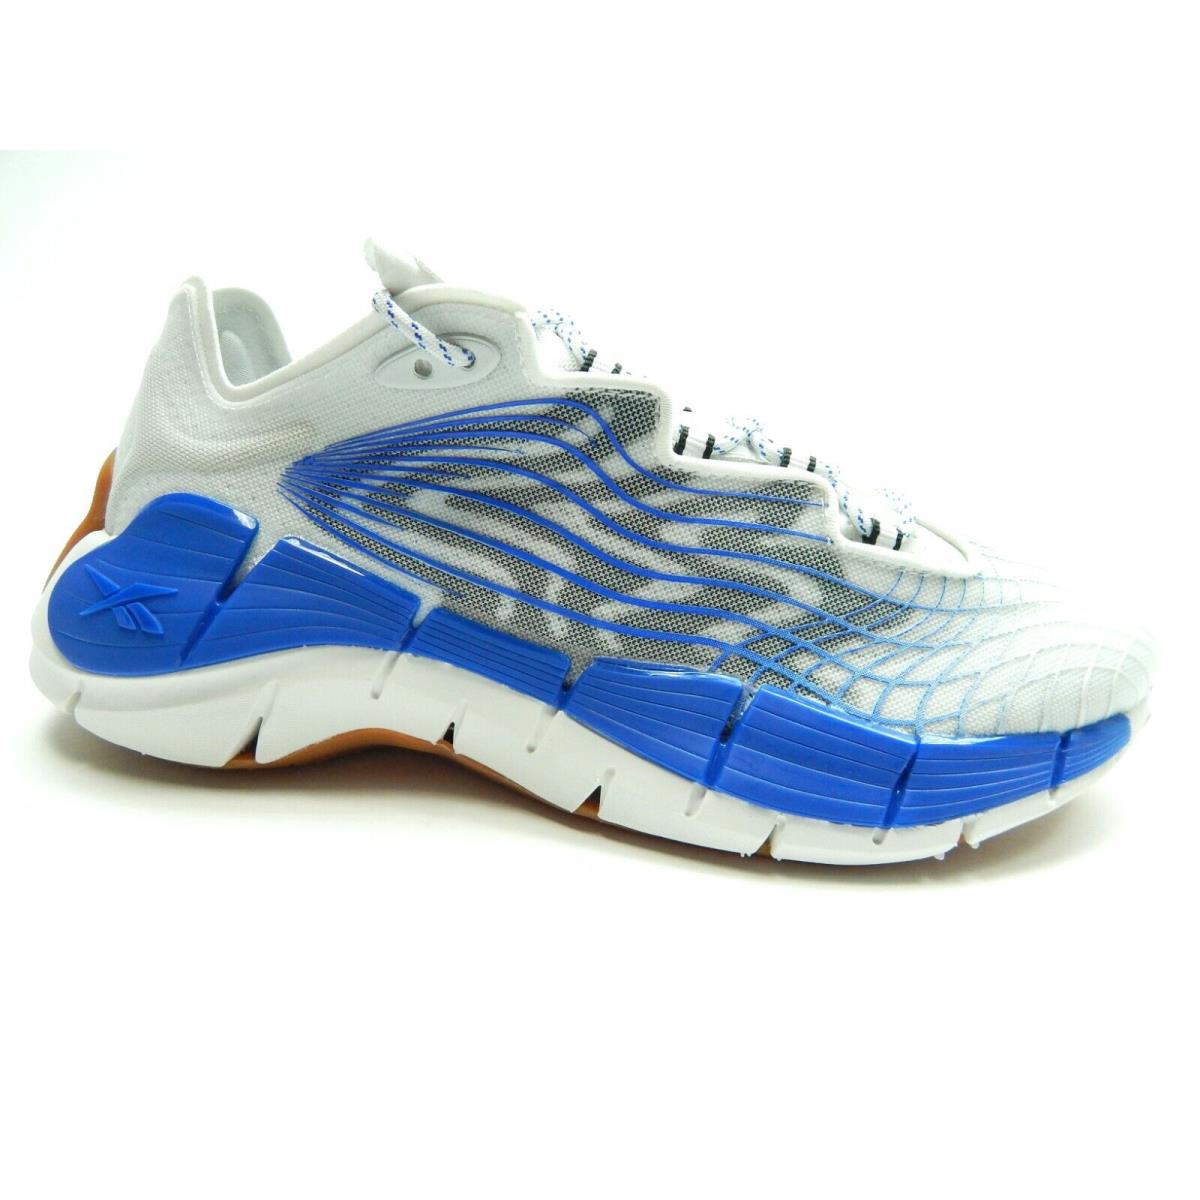 Reebok Zig Kinetica II White Blue FX3019 Running Men Shoes